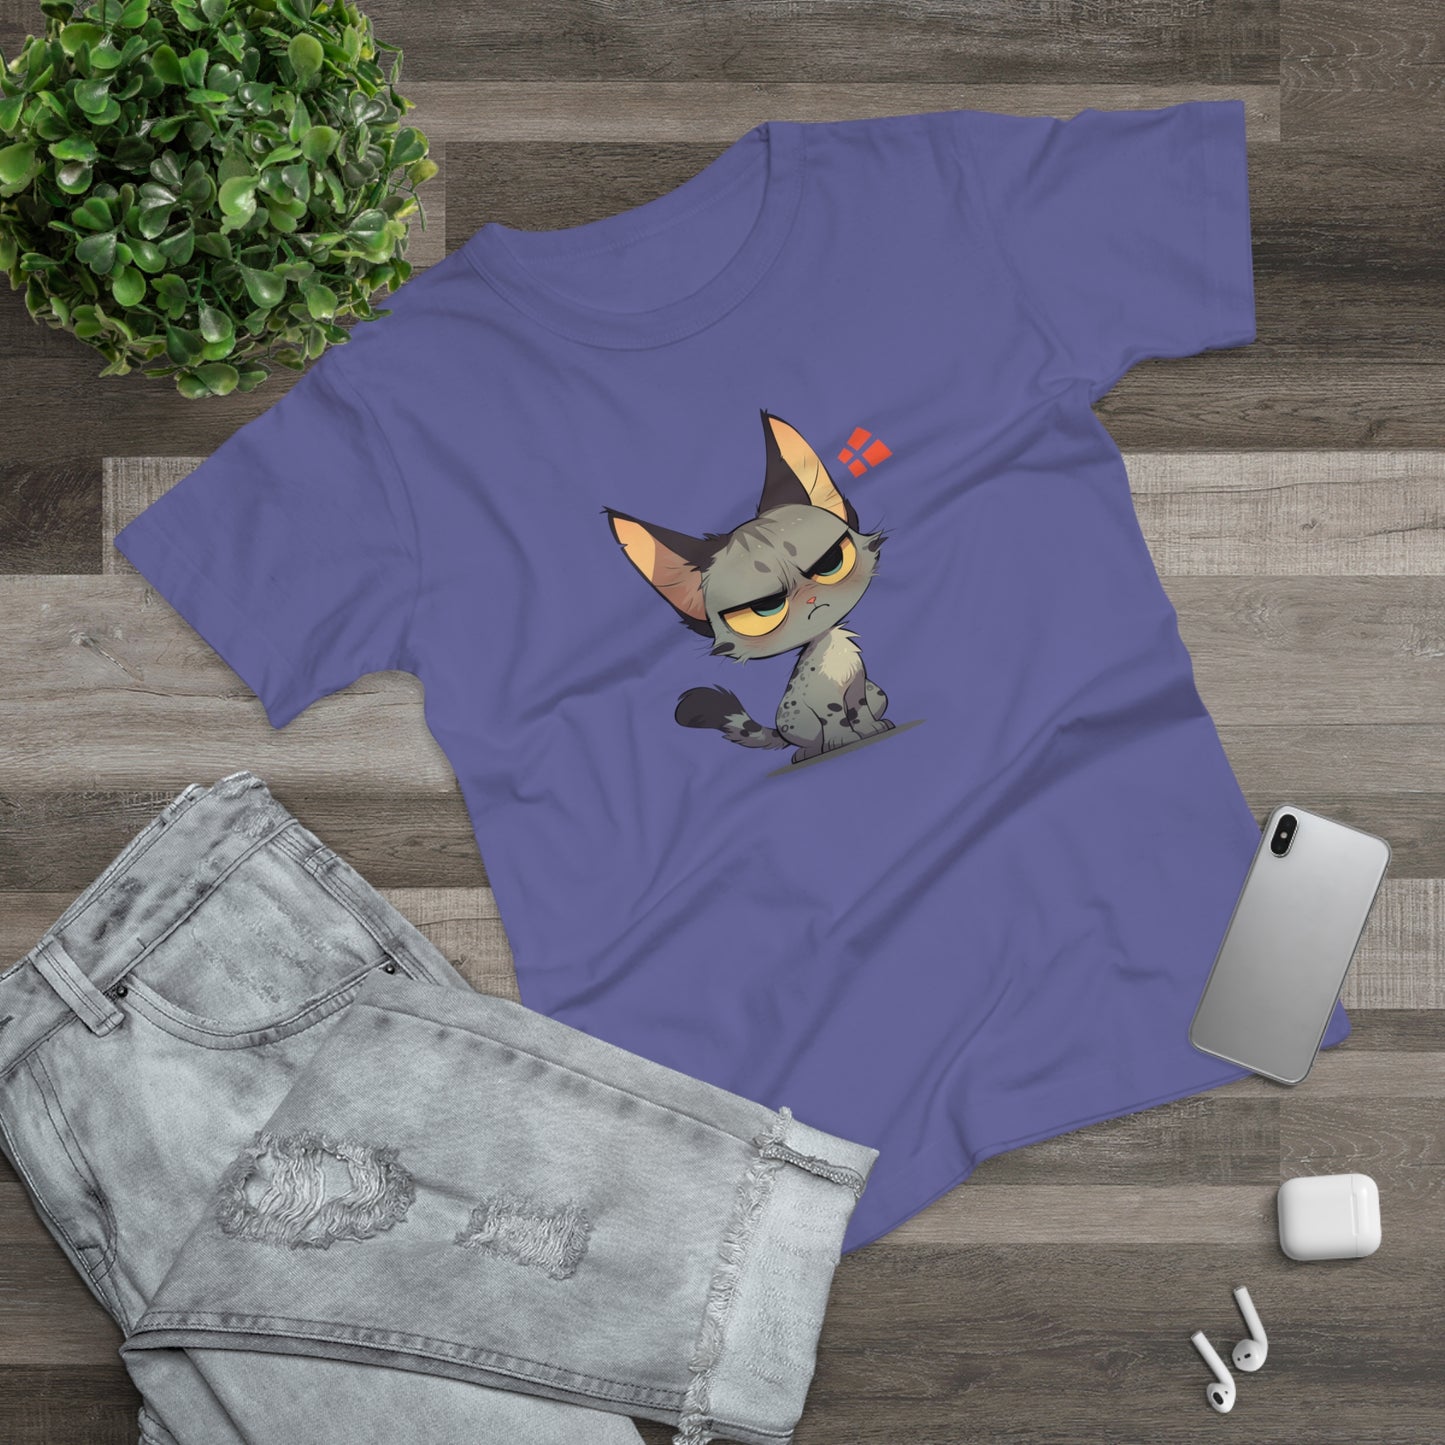 Grummel Katze Frauen T-Shirt